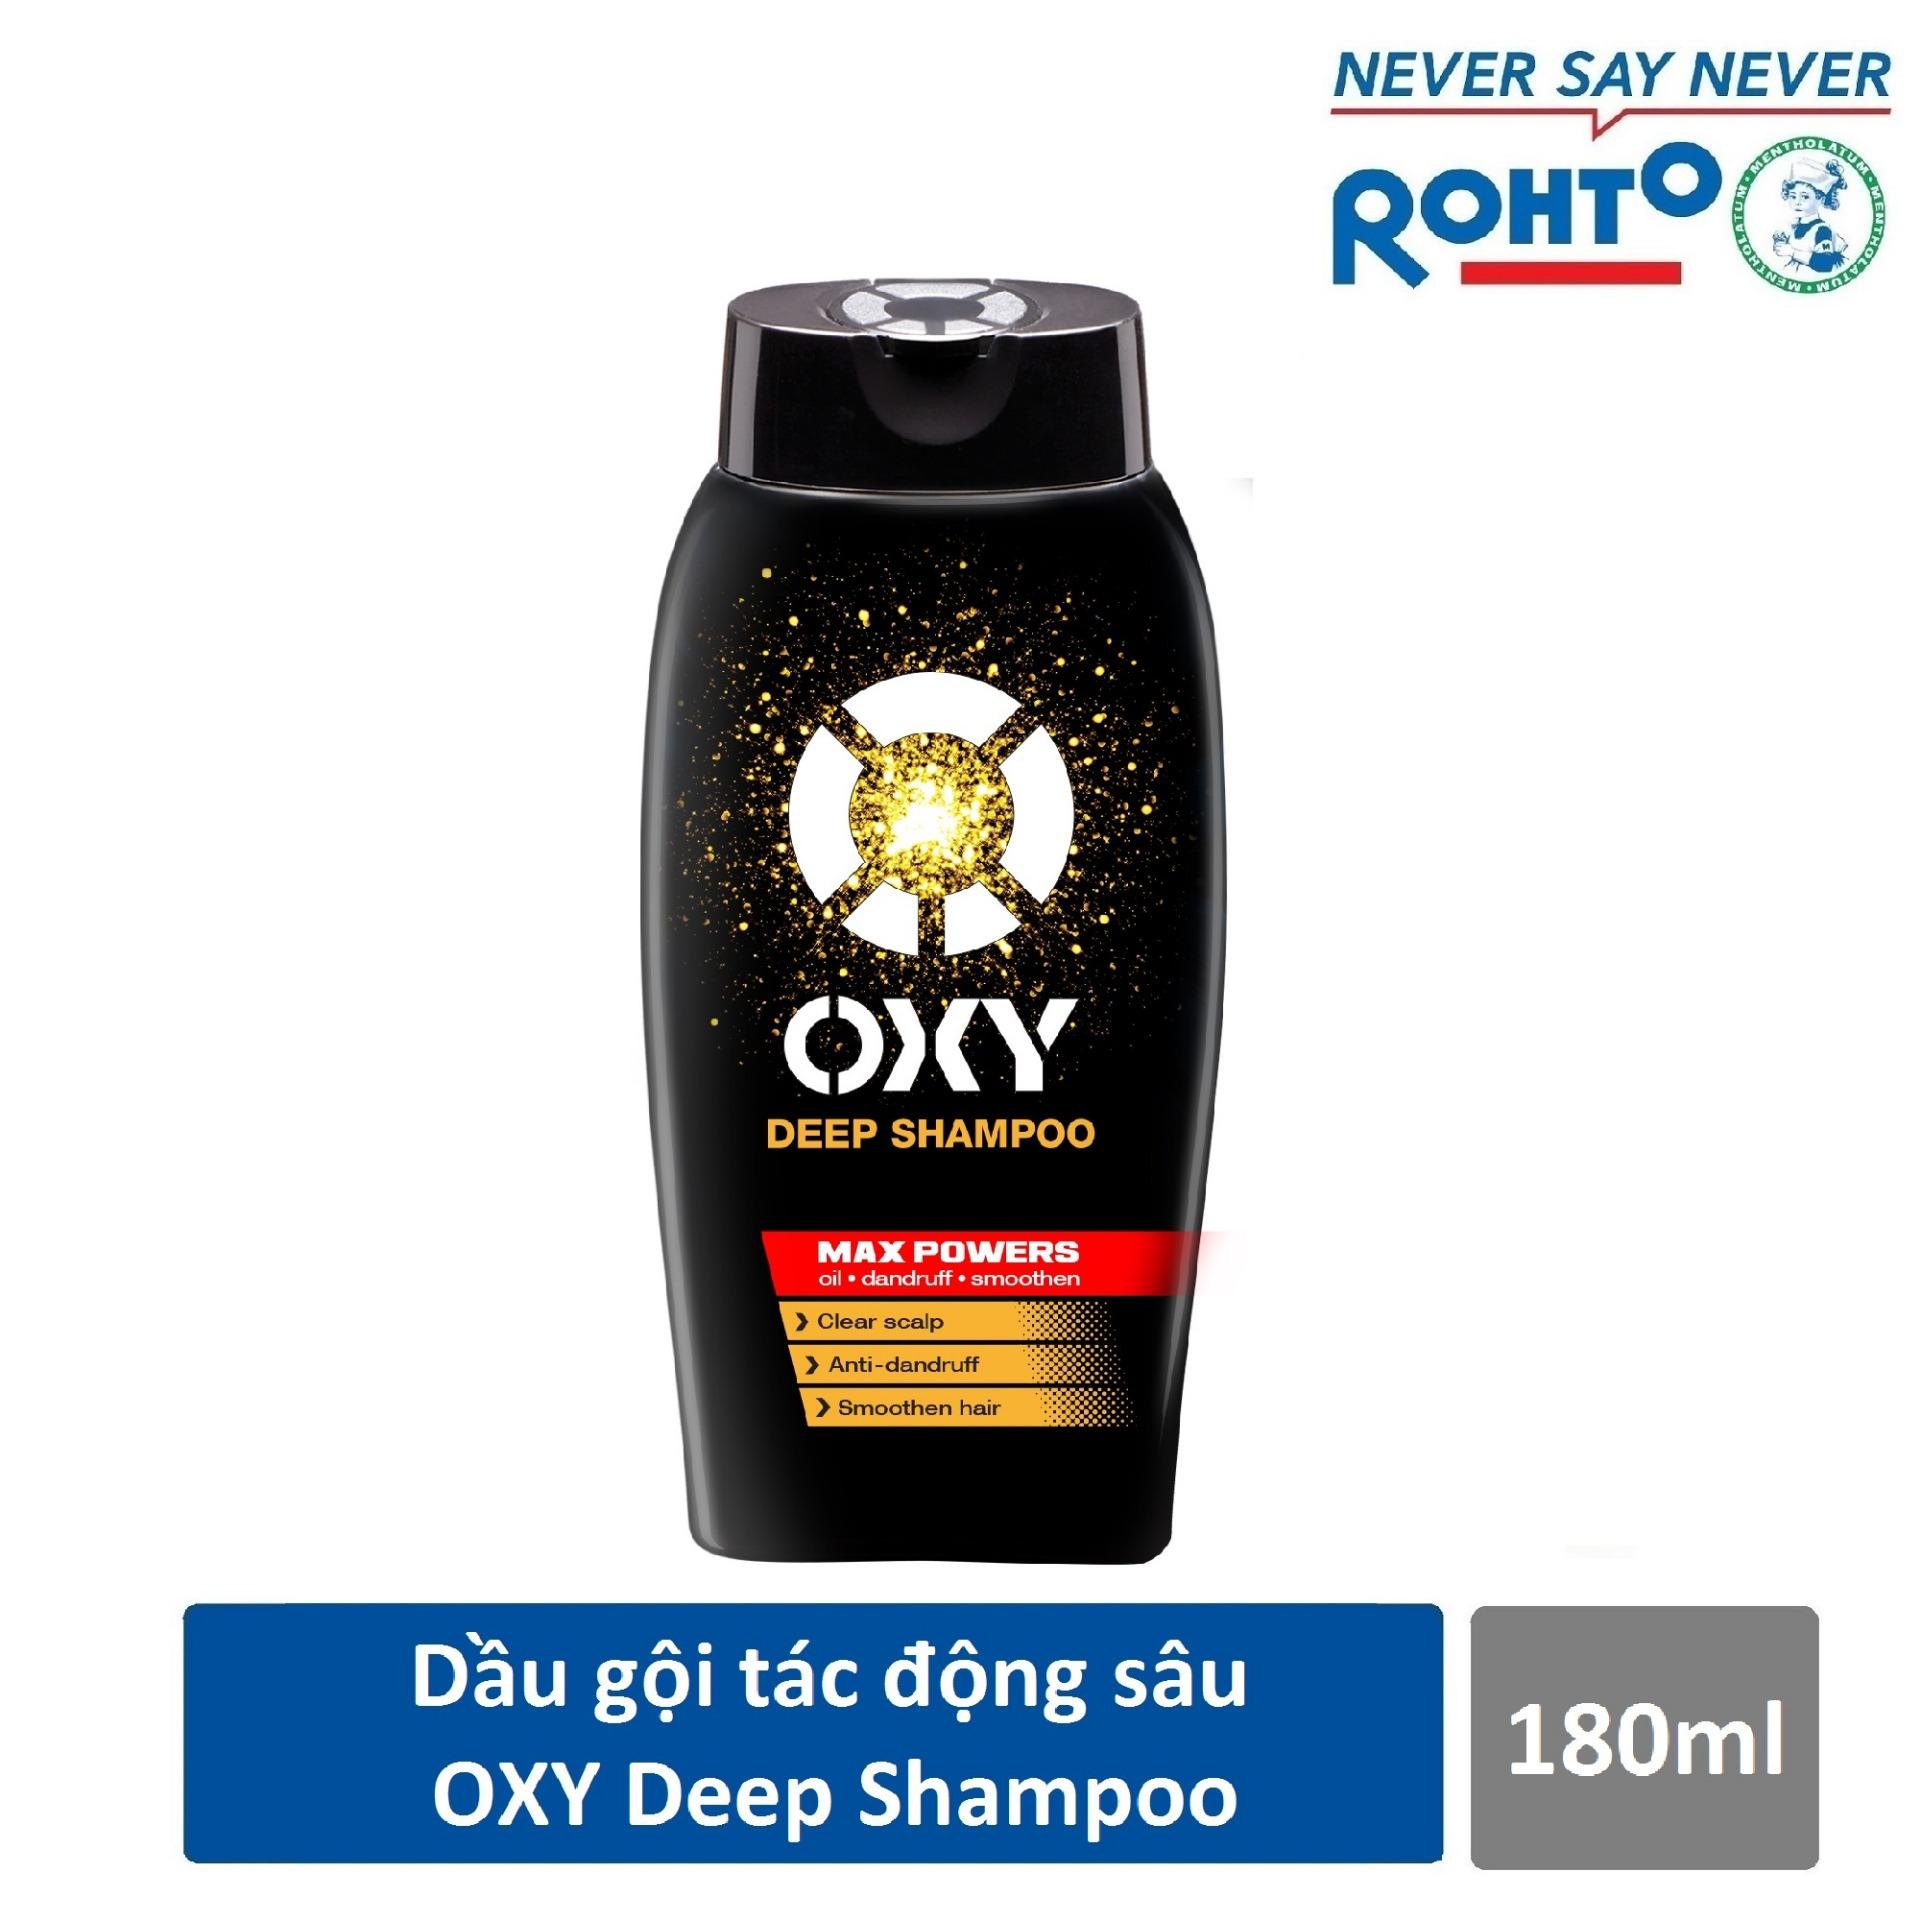 Dầu gội tác động sâu cho nam Oxy Deep Shampoo 180ml